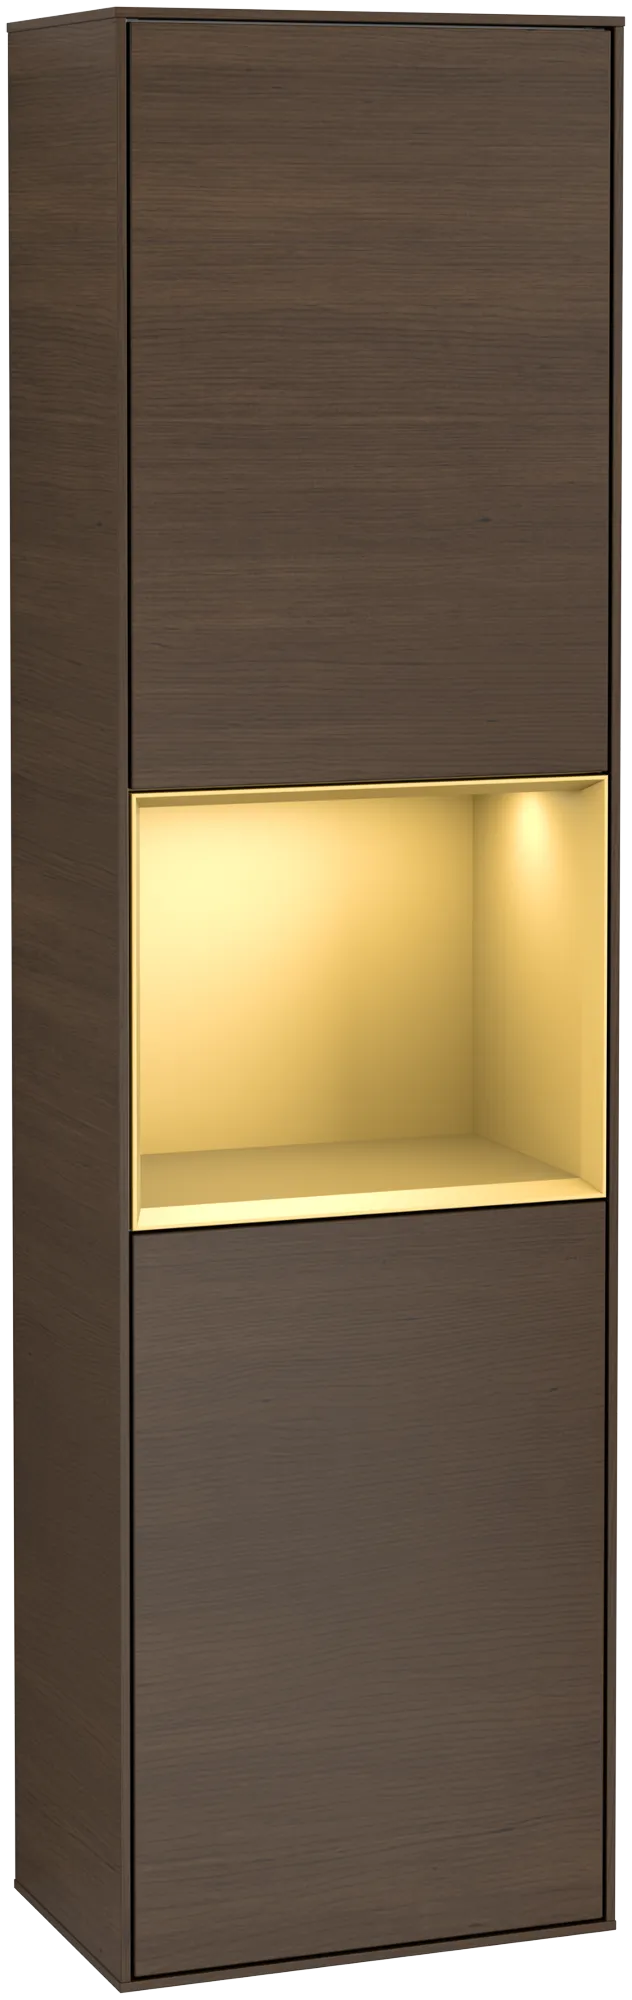 VILLEROY BOCH Finion Tall cabinet, with lighting, 2 doors, 418 x 1516 x 270 mm, Walnut Veneer / Gold Matt Lacquer #G470HFGN resmi